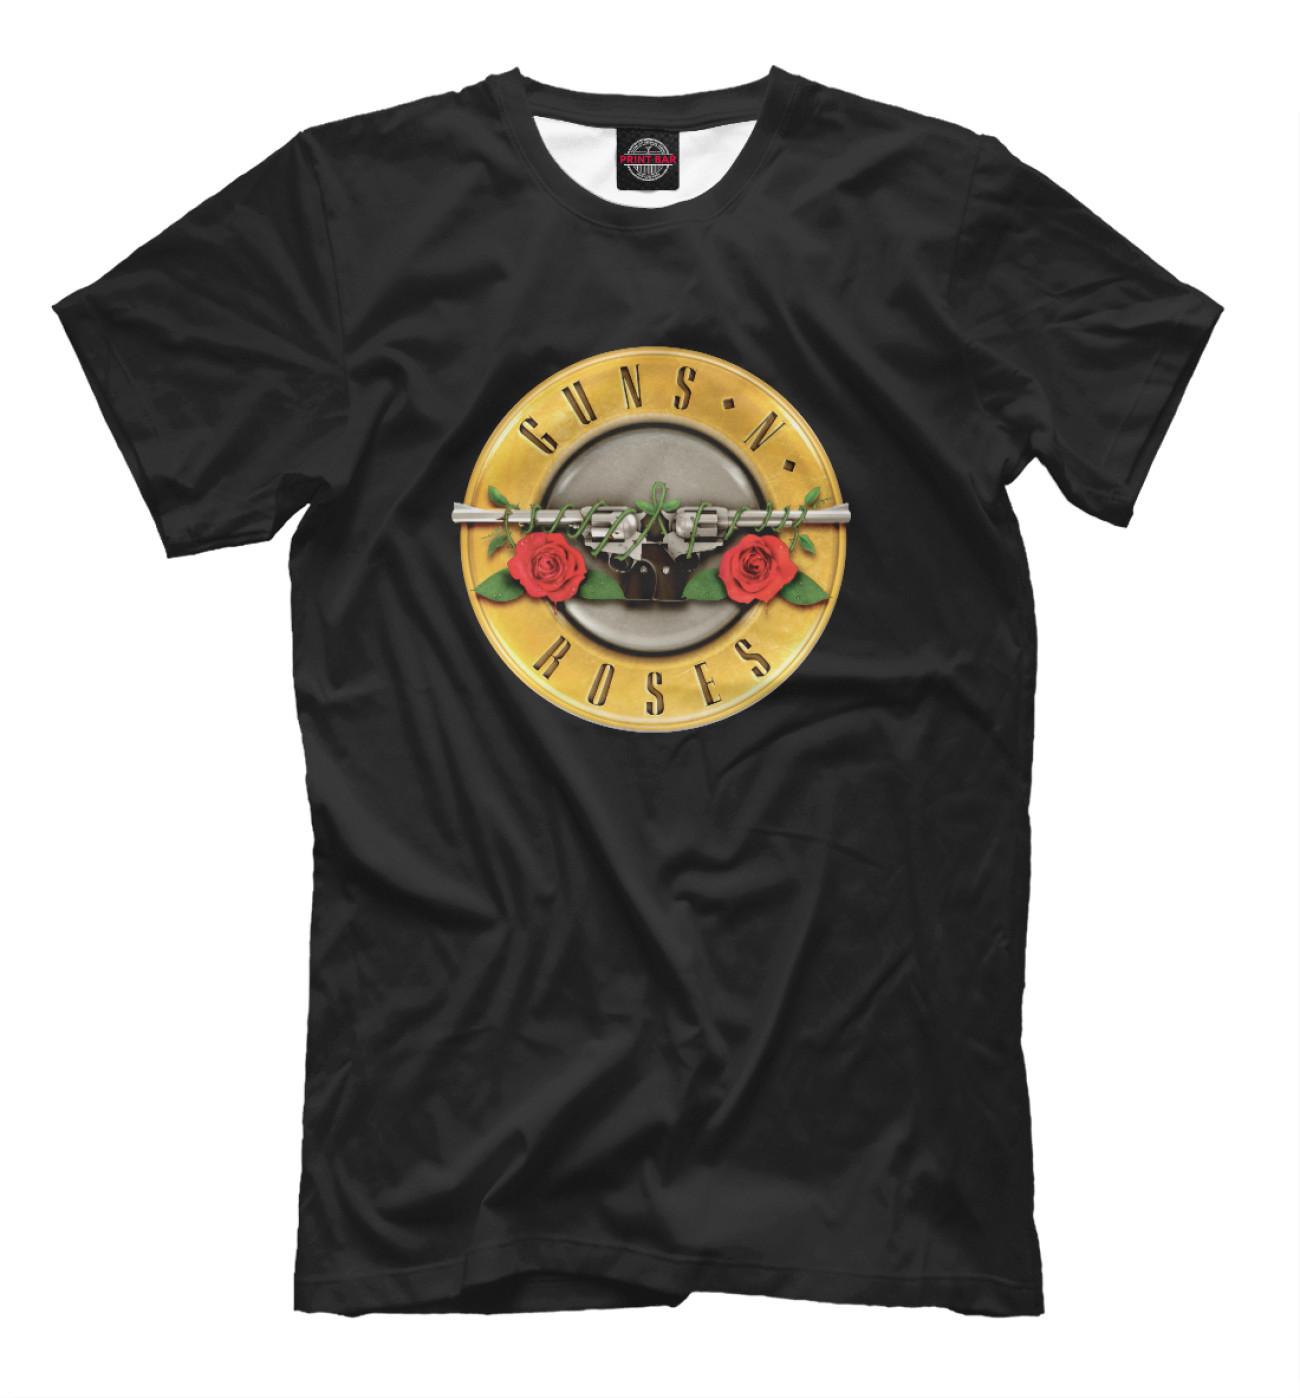 Мужская Футболка Guns N Roses, артикул: GNR-787346-fut-2